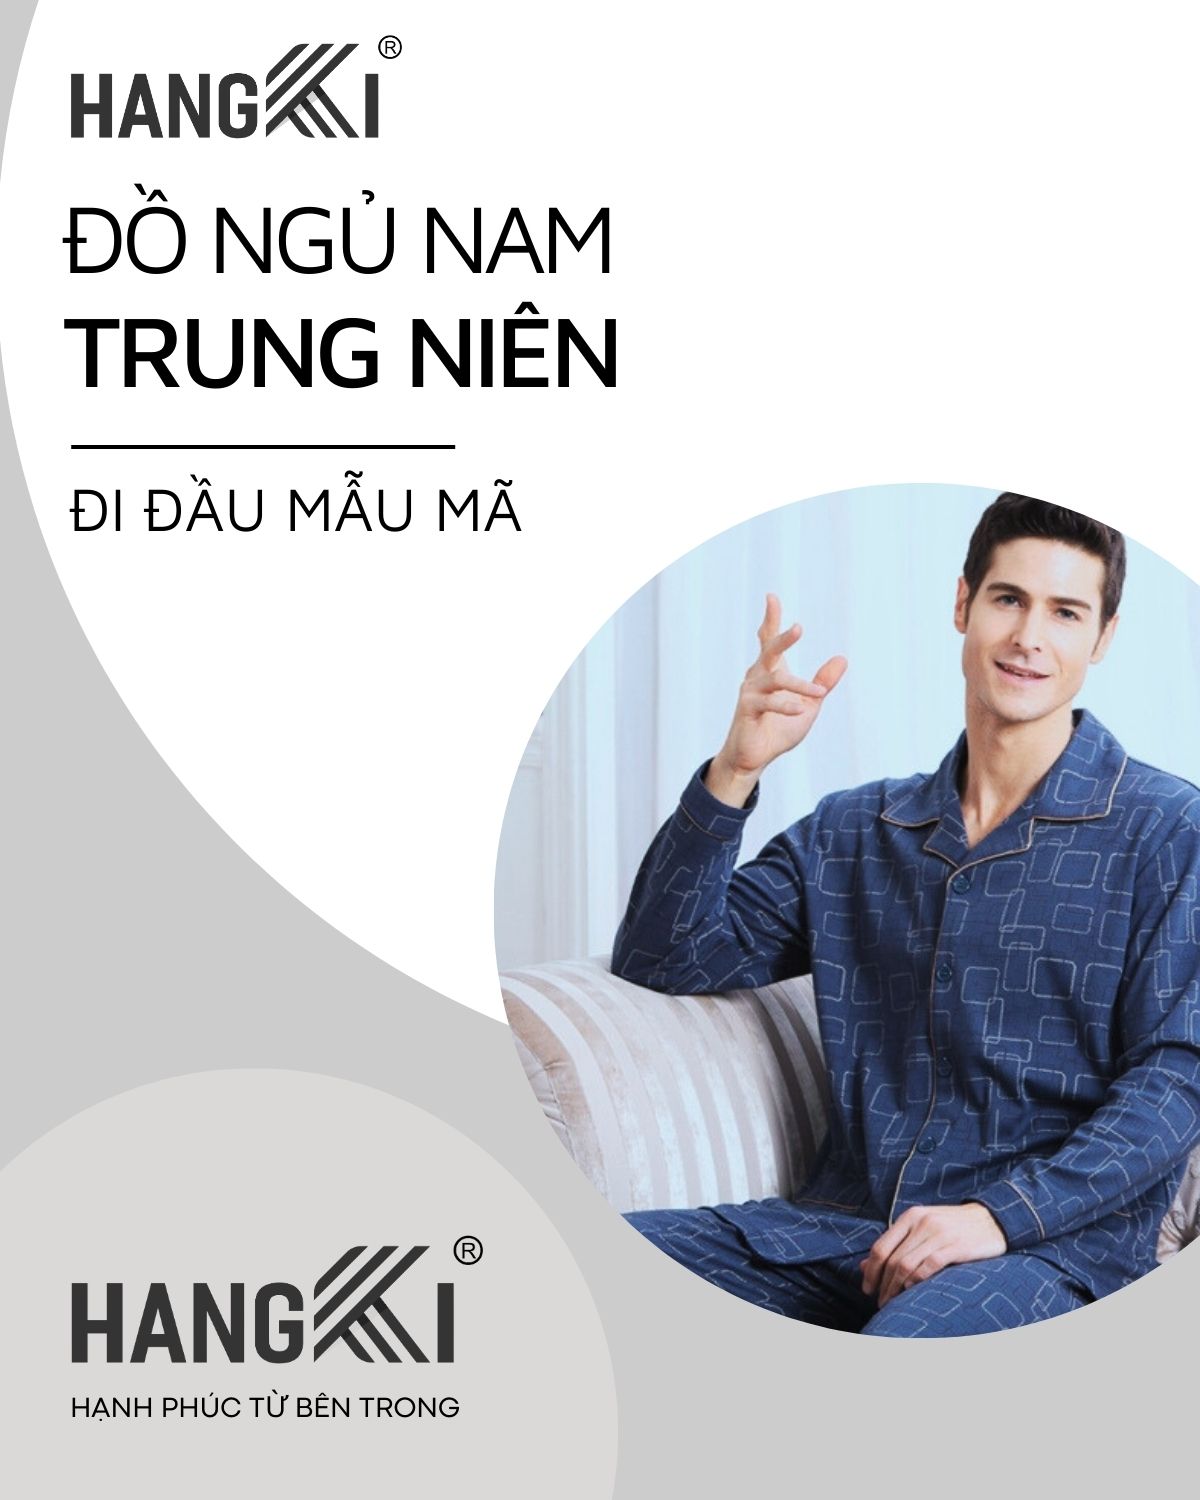 Pijama Nam Trung Niên